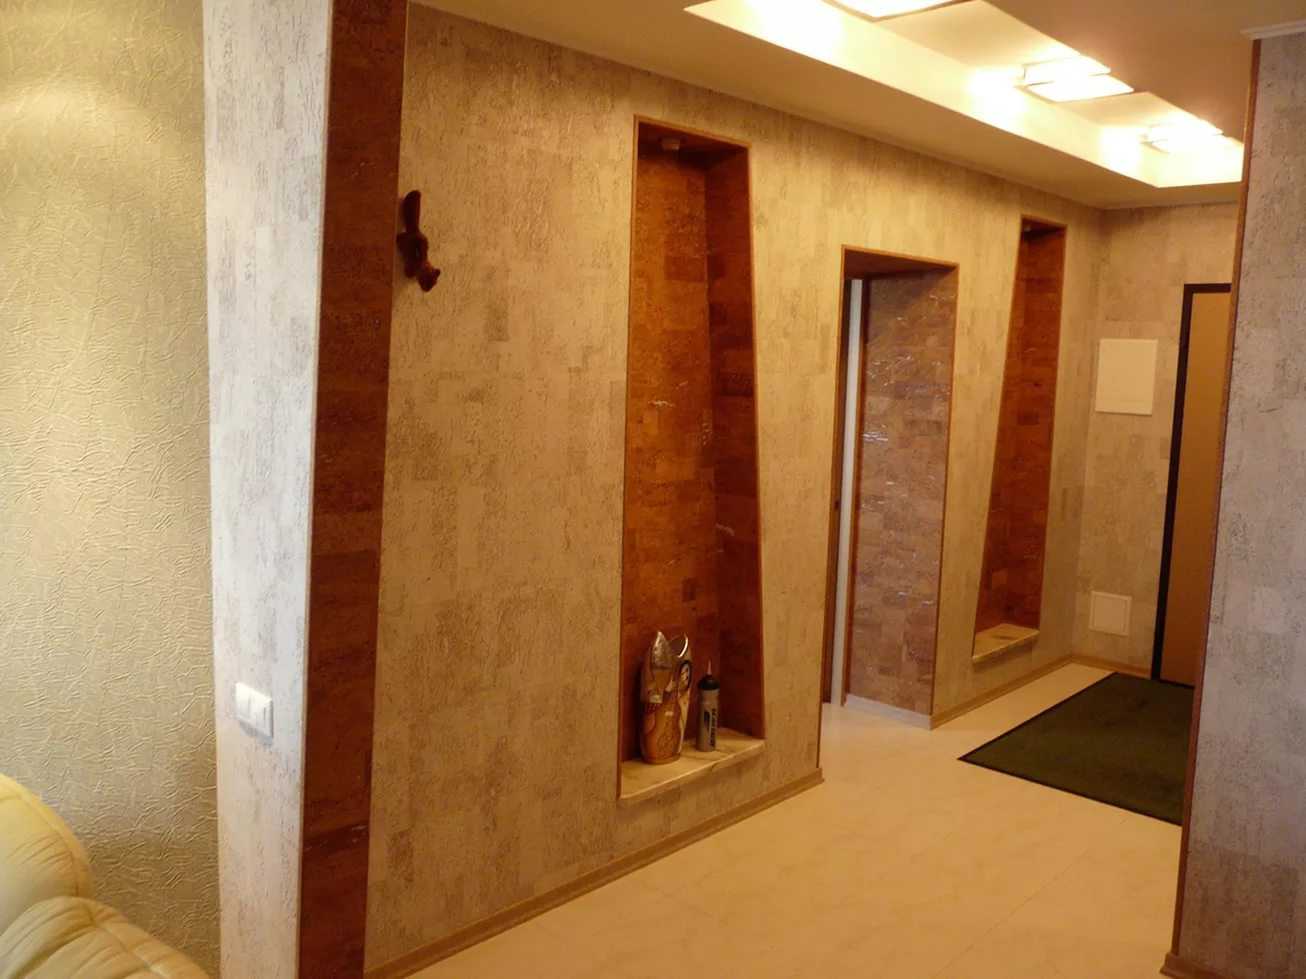 Пробковые обои для стен в интерьере прихожей, ванной и детской, виды покрытия, его плюсы и минусы